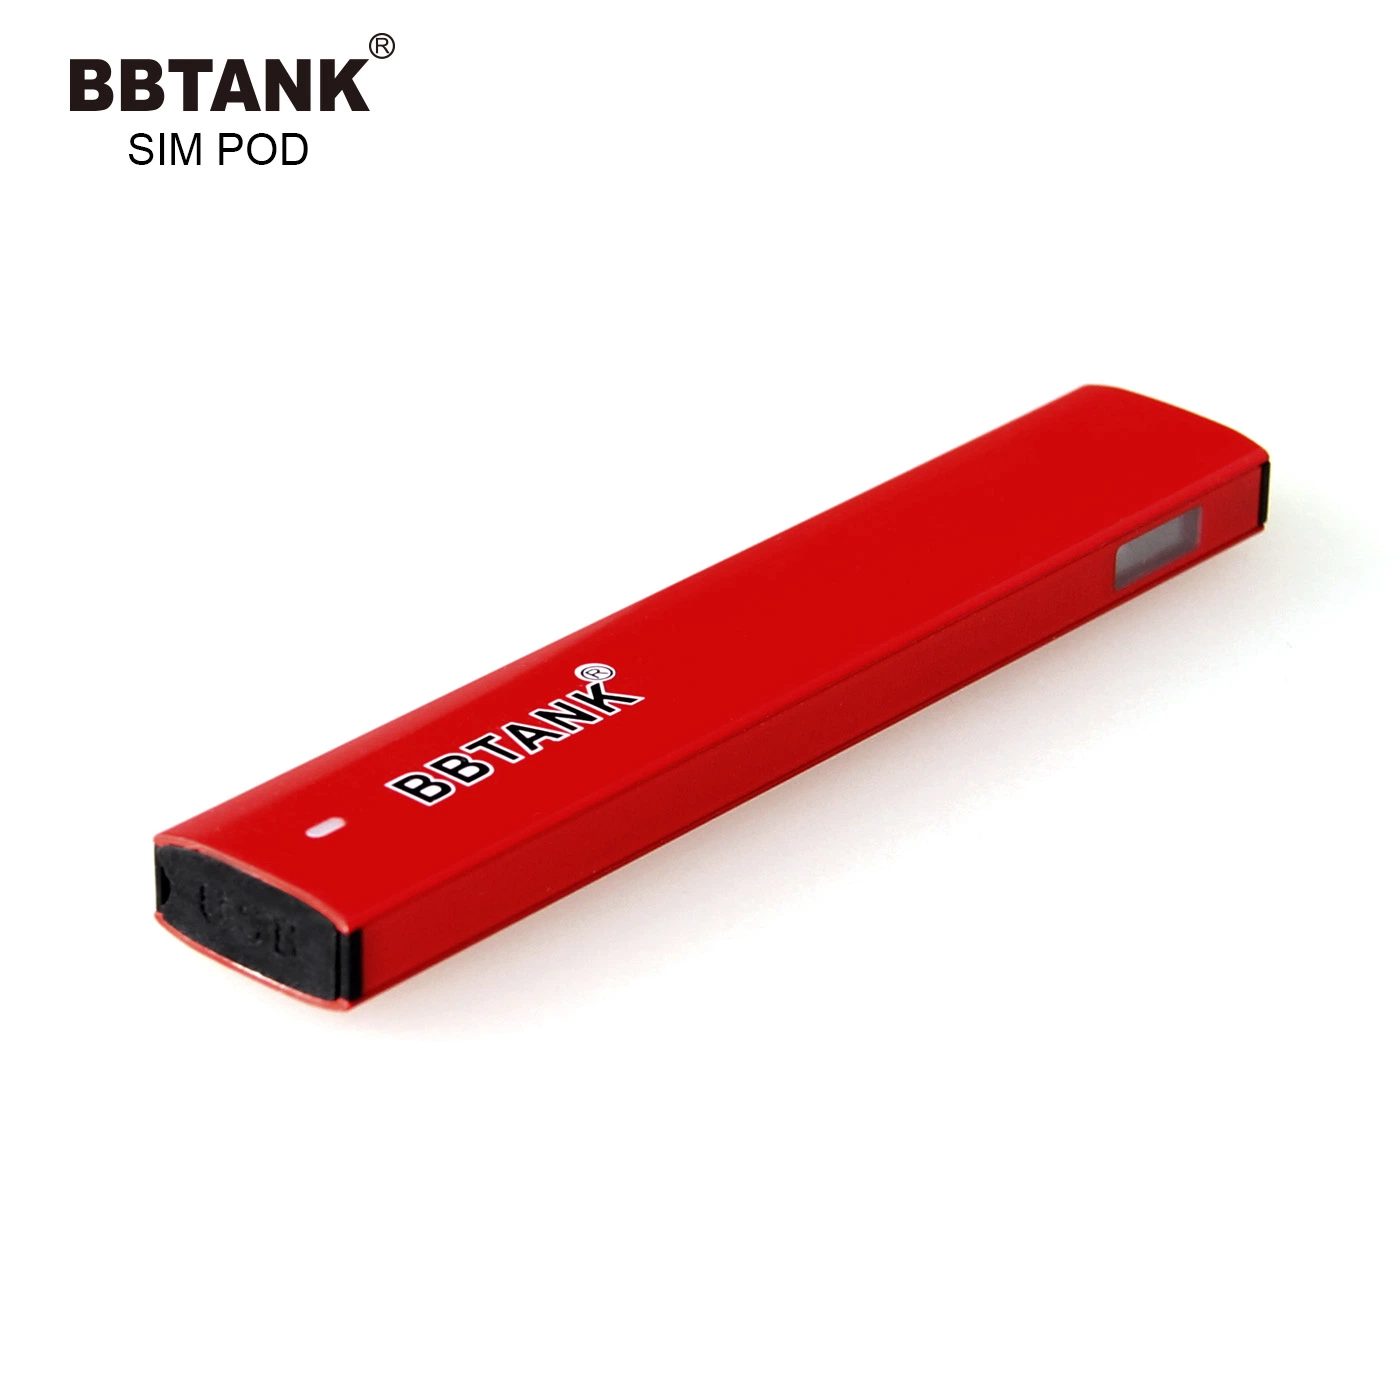 Ceraimc 1 Ml Thick Oil Pod Half Gram Vape Pen Professional Manufacturer Bbtank Disposable/Chargeable Vaporizer Pen